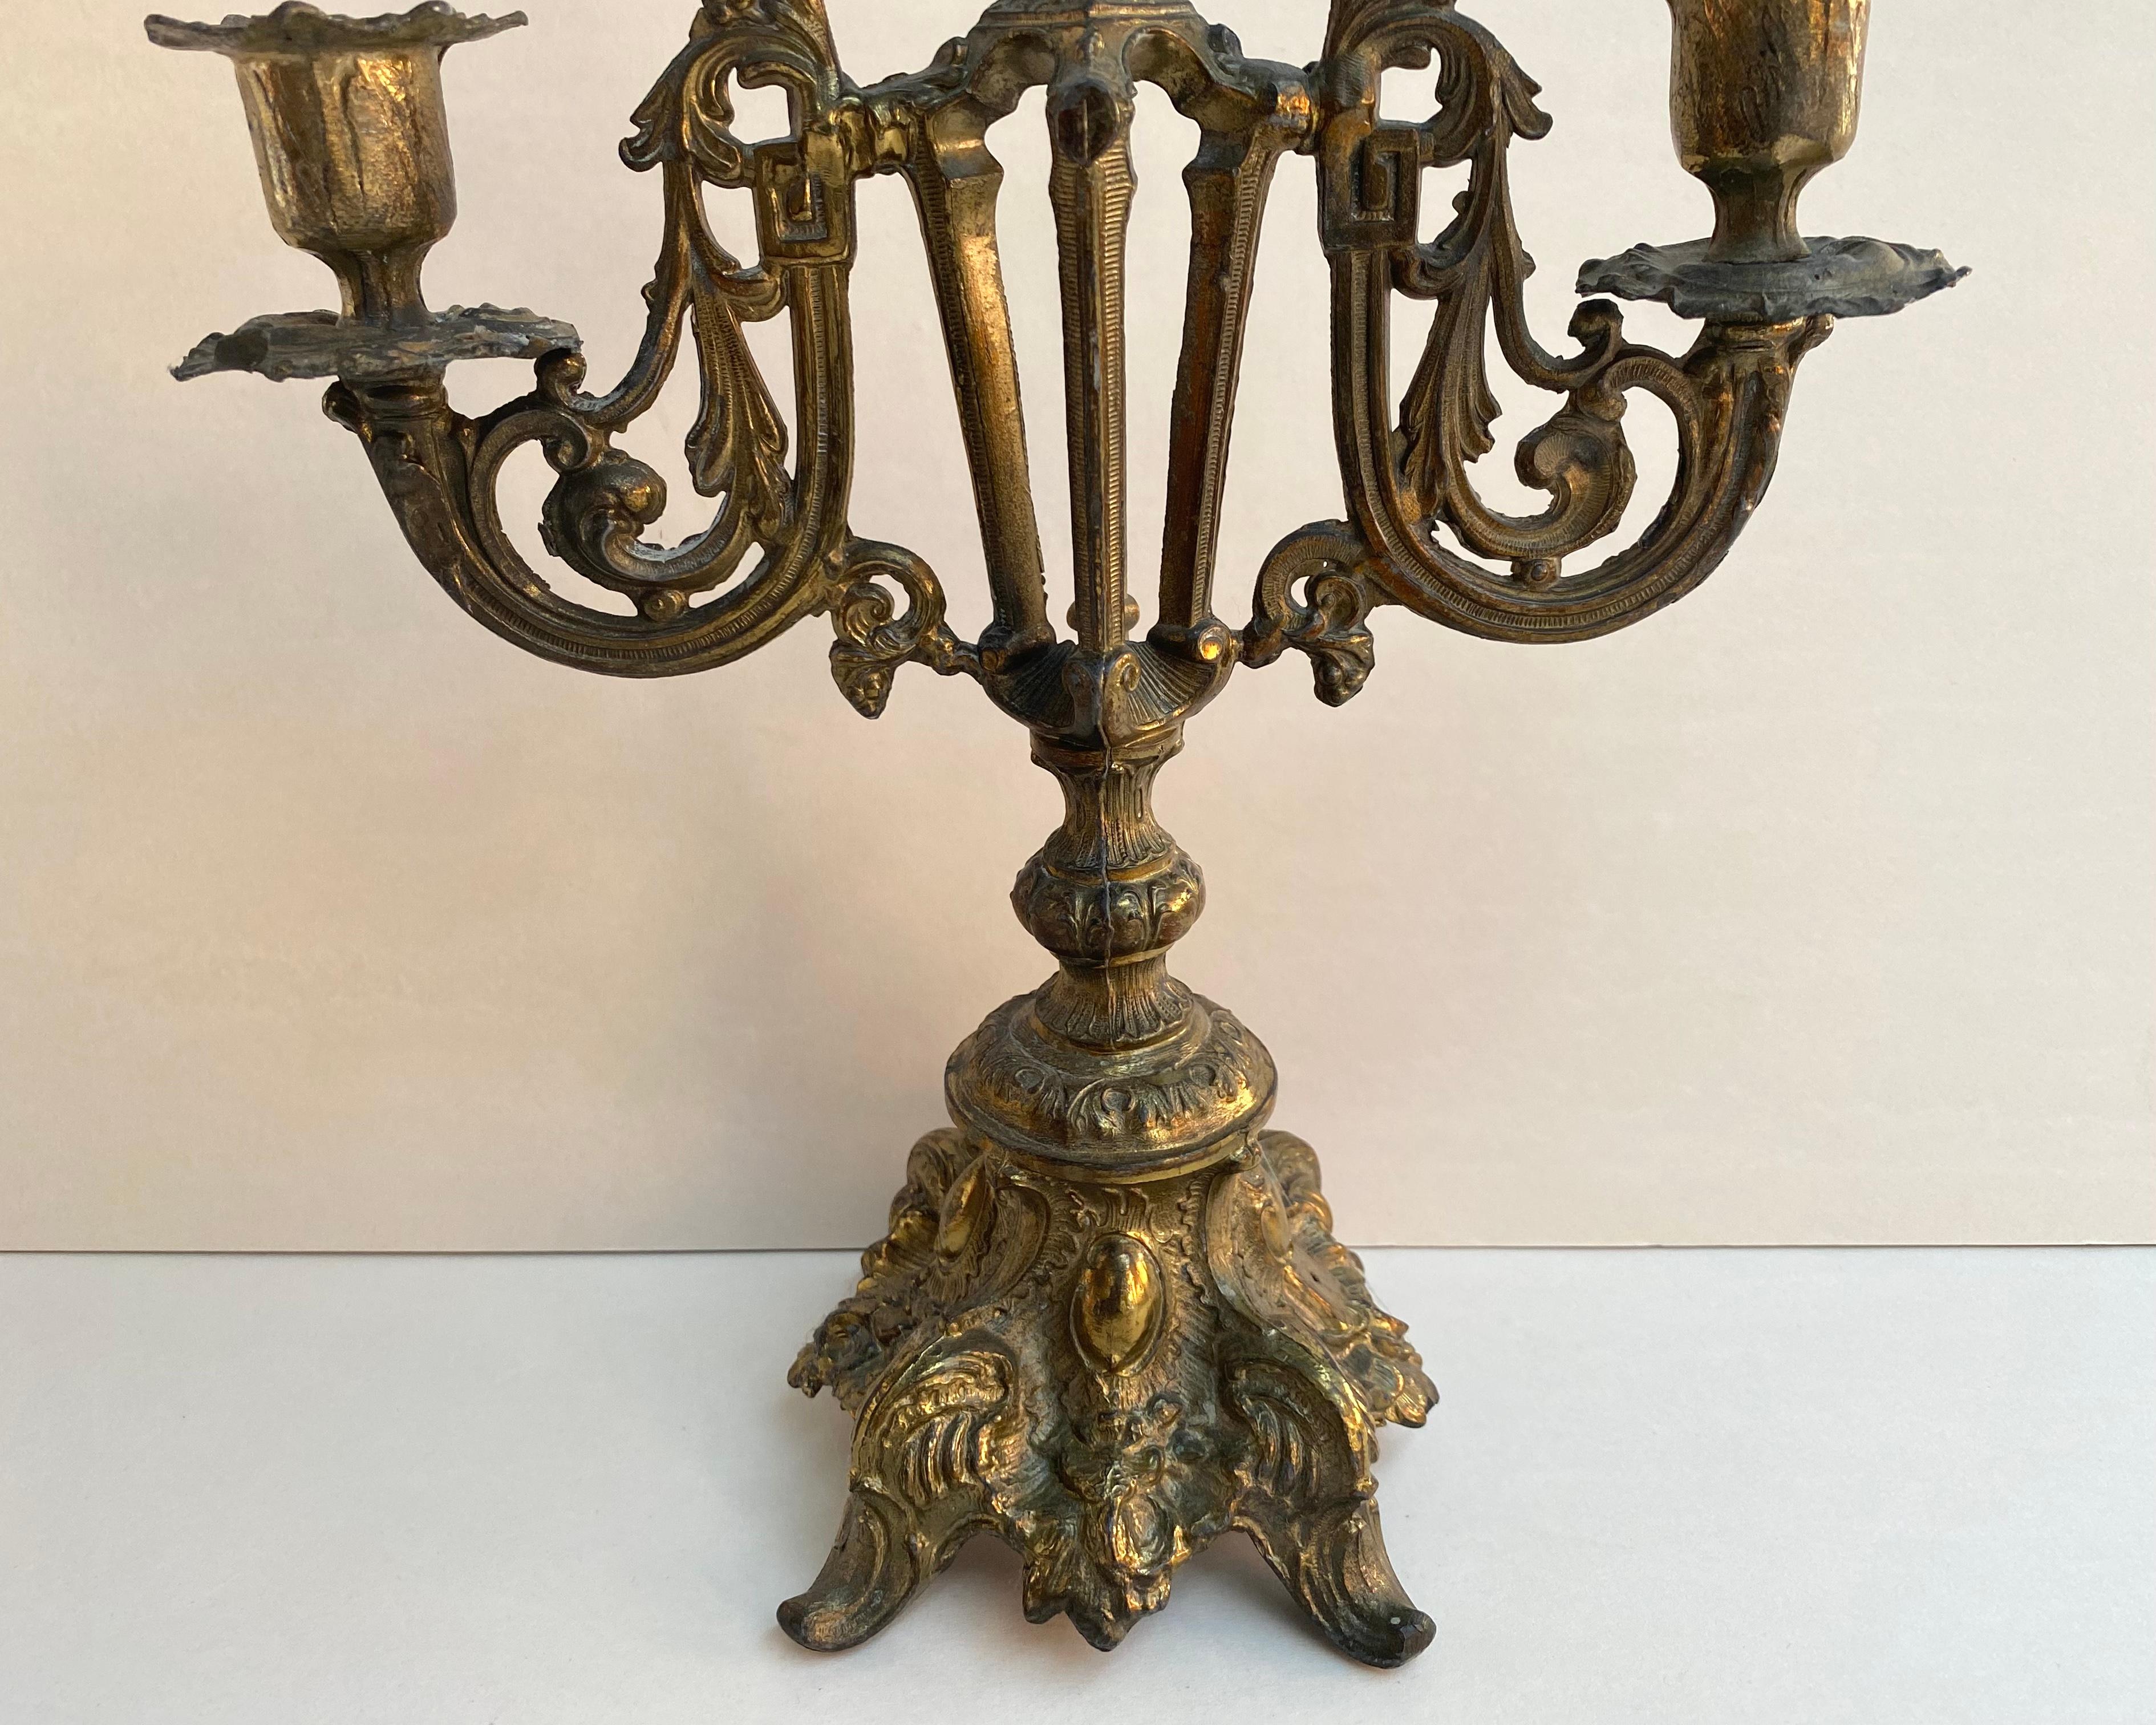 Baroque Ornate Antique Candlestick Holder in Brass, France, 1900 3 Arm Candleholder